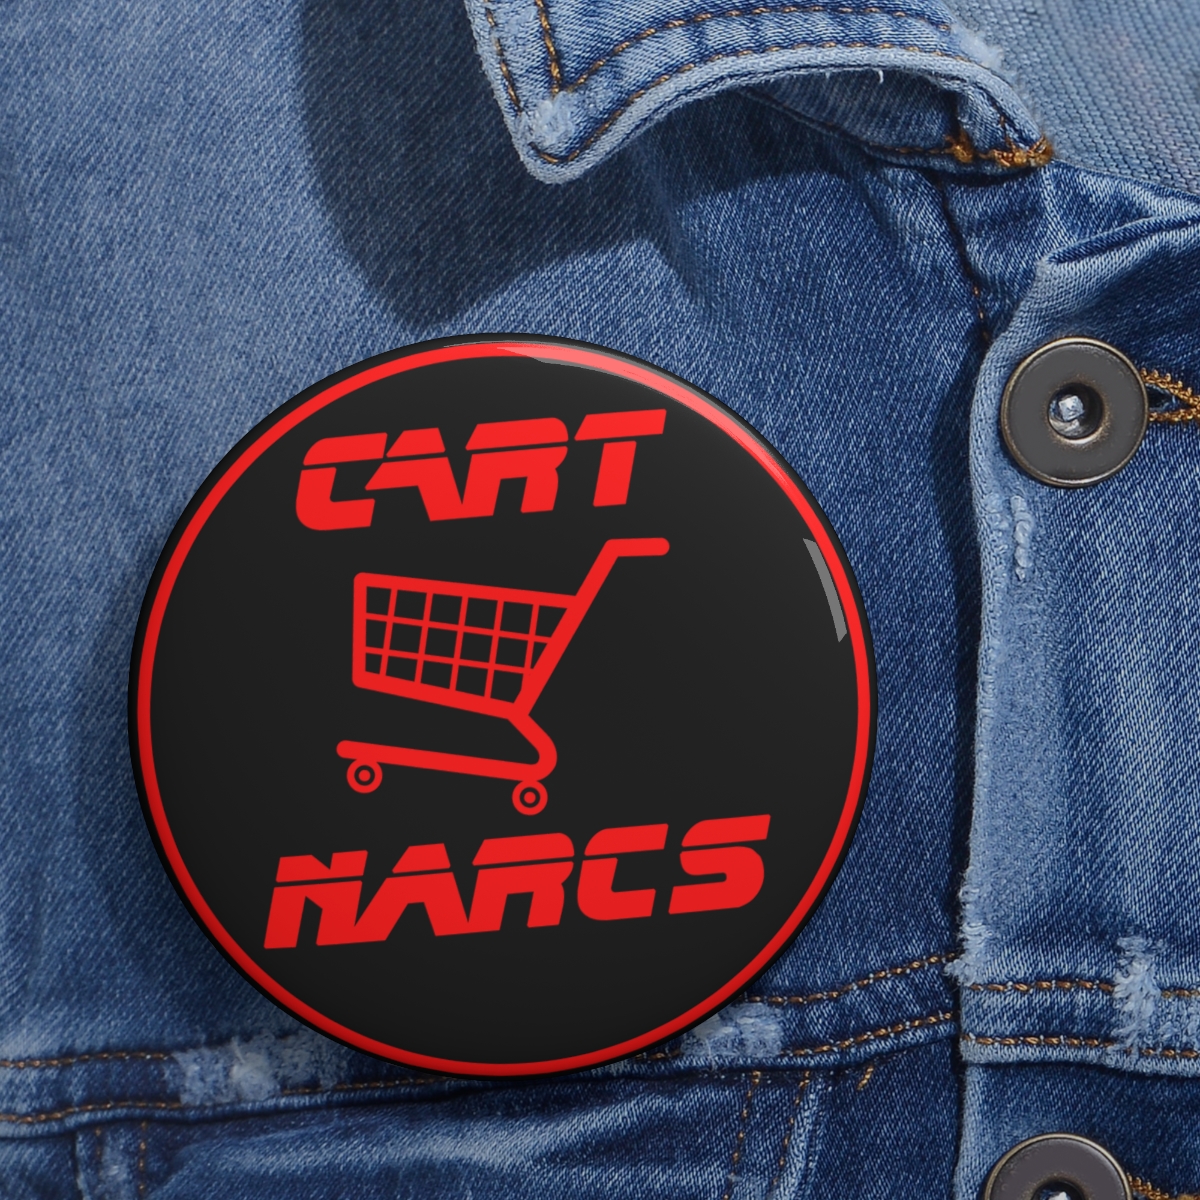 Cart Narcs Pin Button product main image